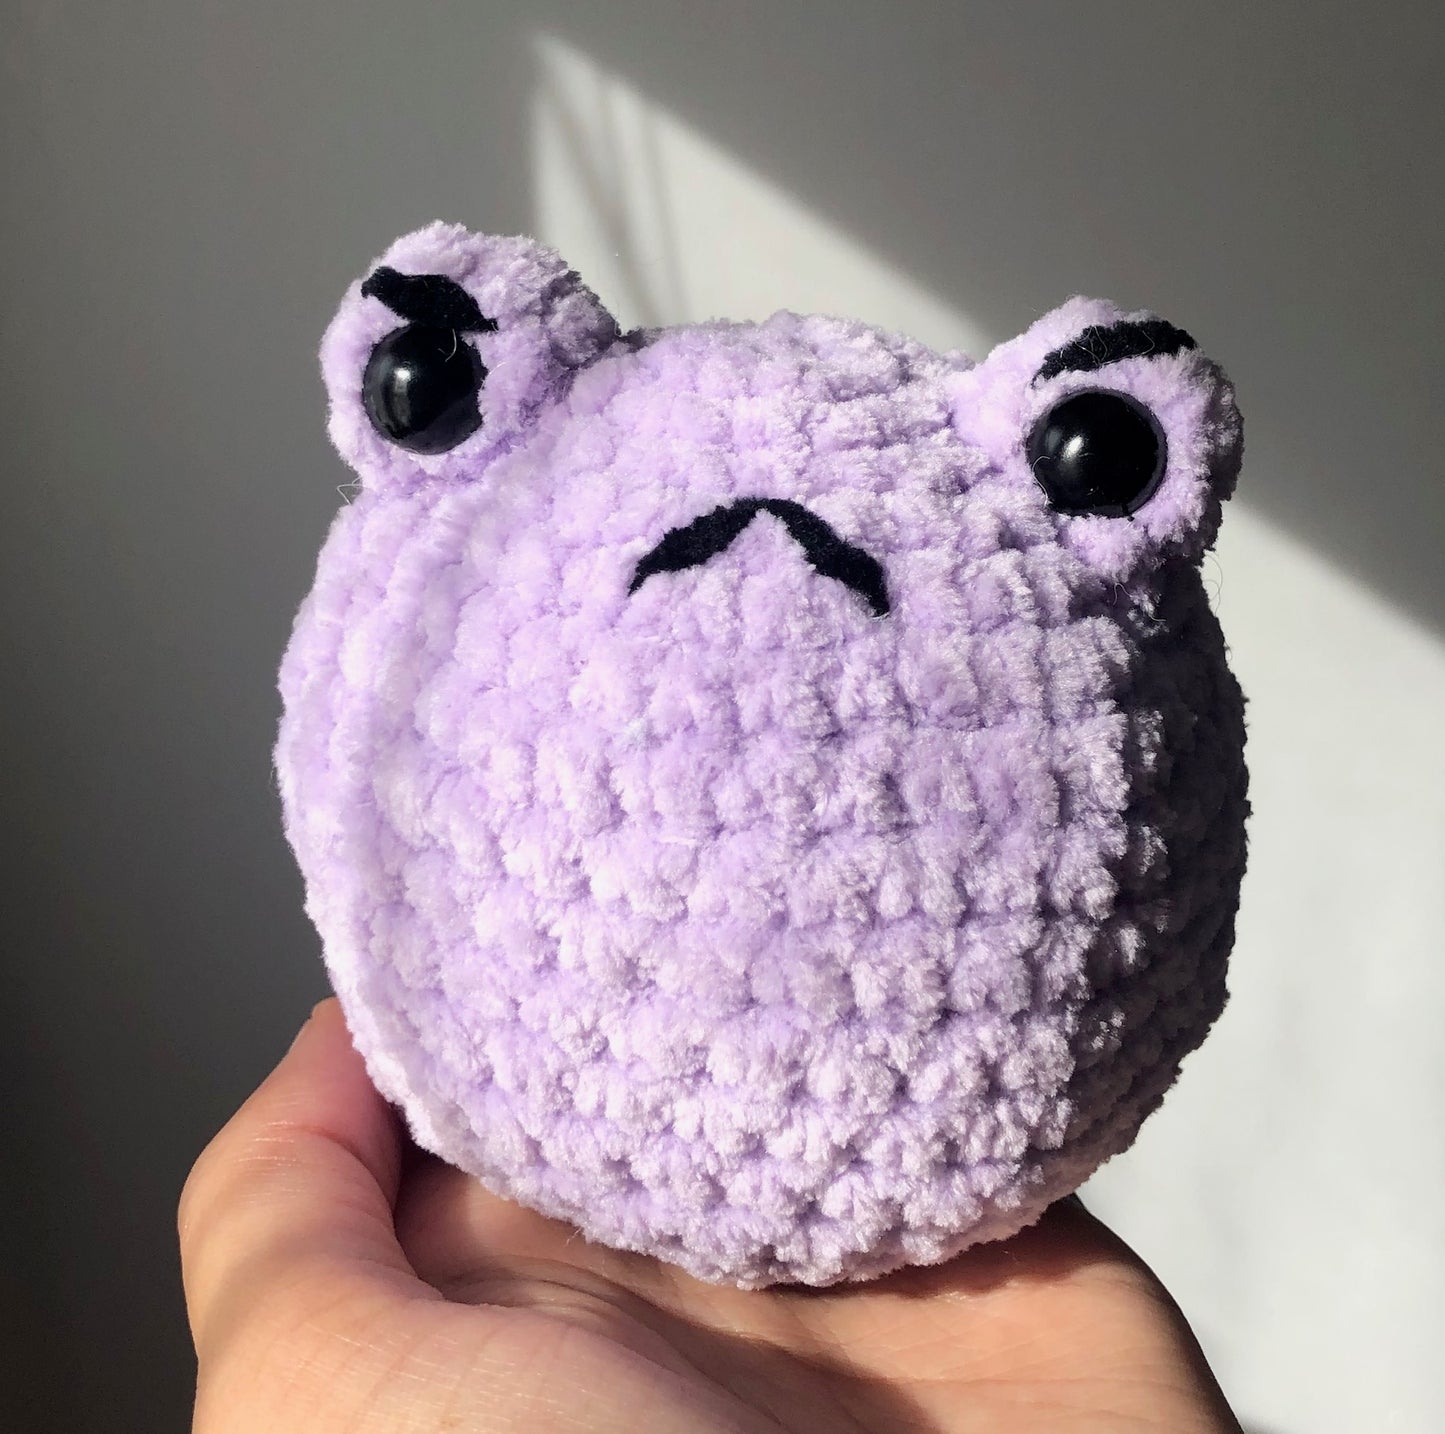 Mini reversible frog crochet kit - beginner